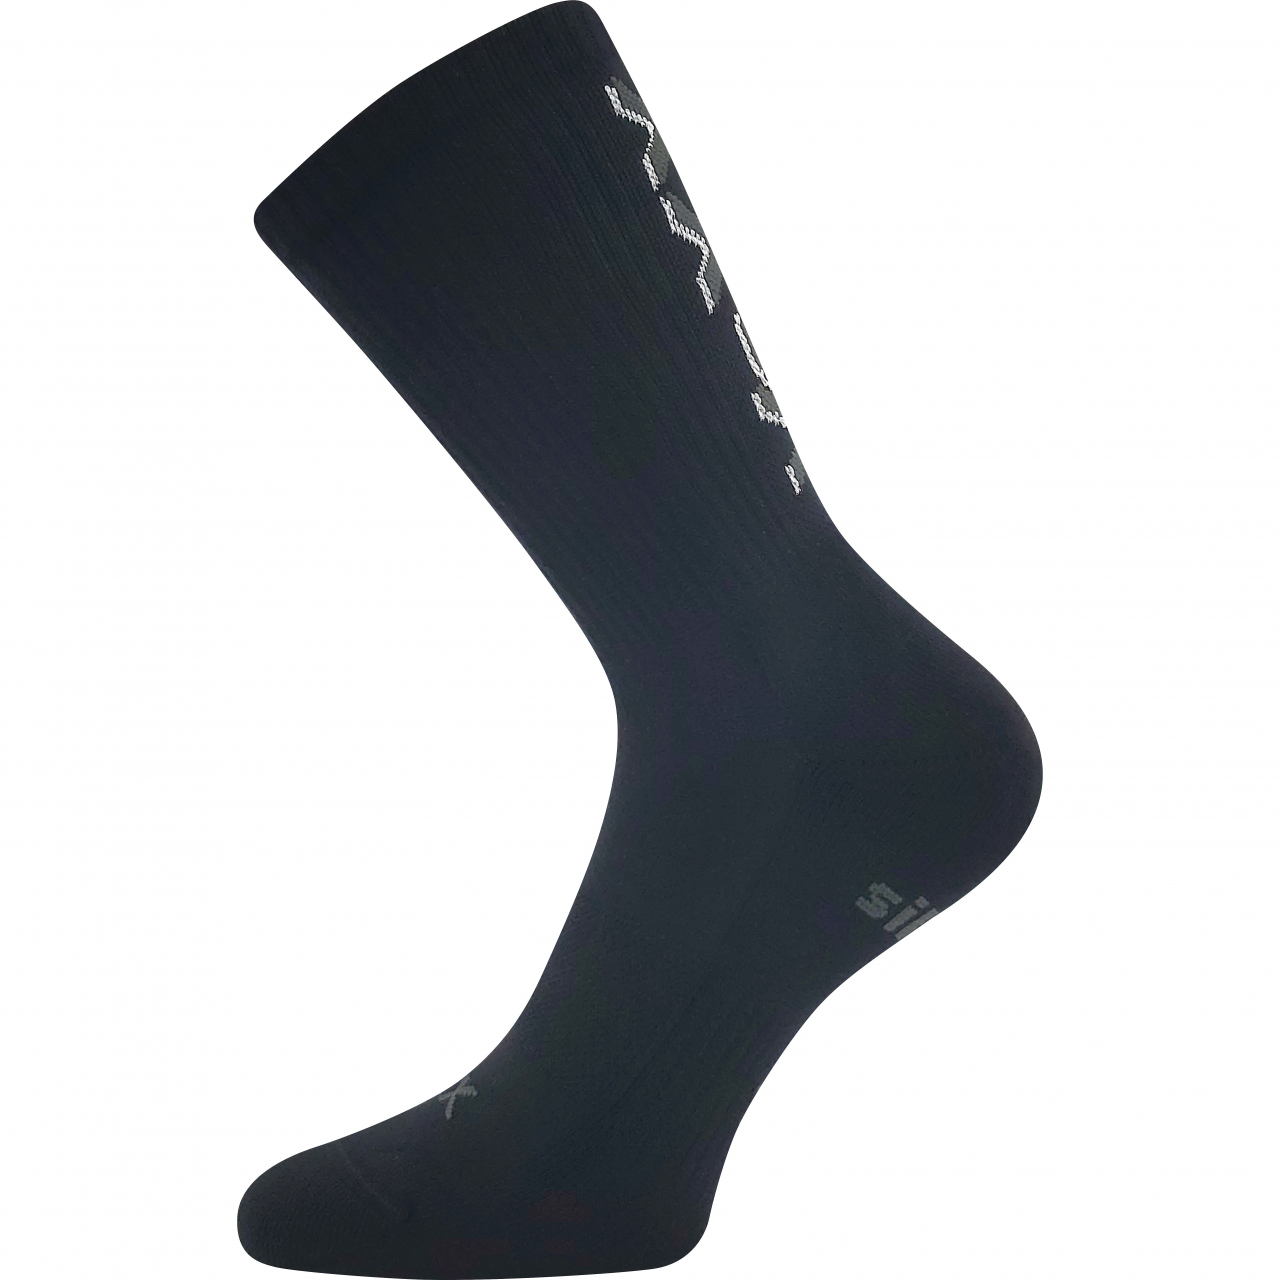 Ponožky unisex sportovní Voxx Legend - černé, 35-38